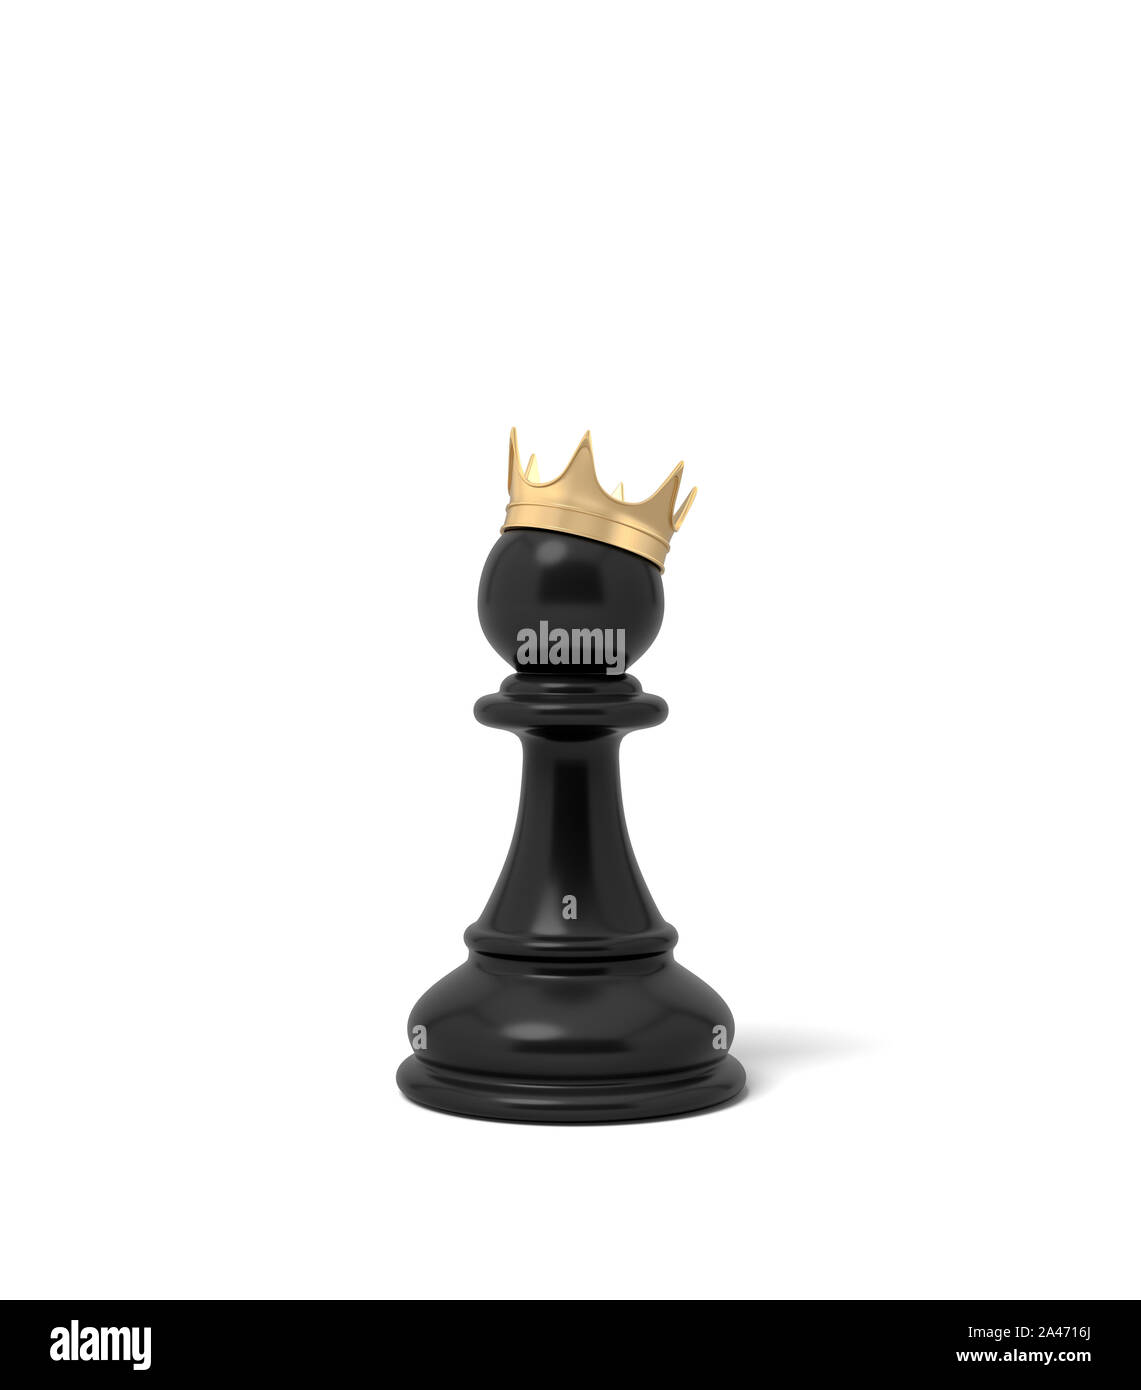 der könig. hölzerne schach stück - Stock Photo #11121550